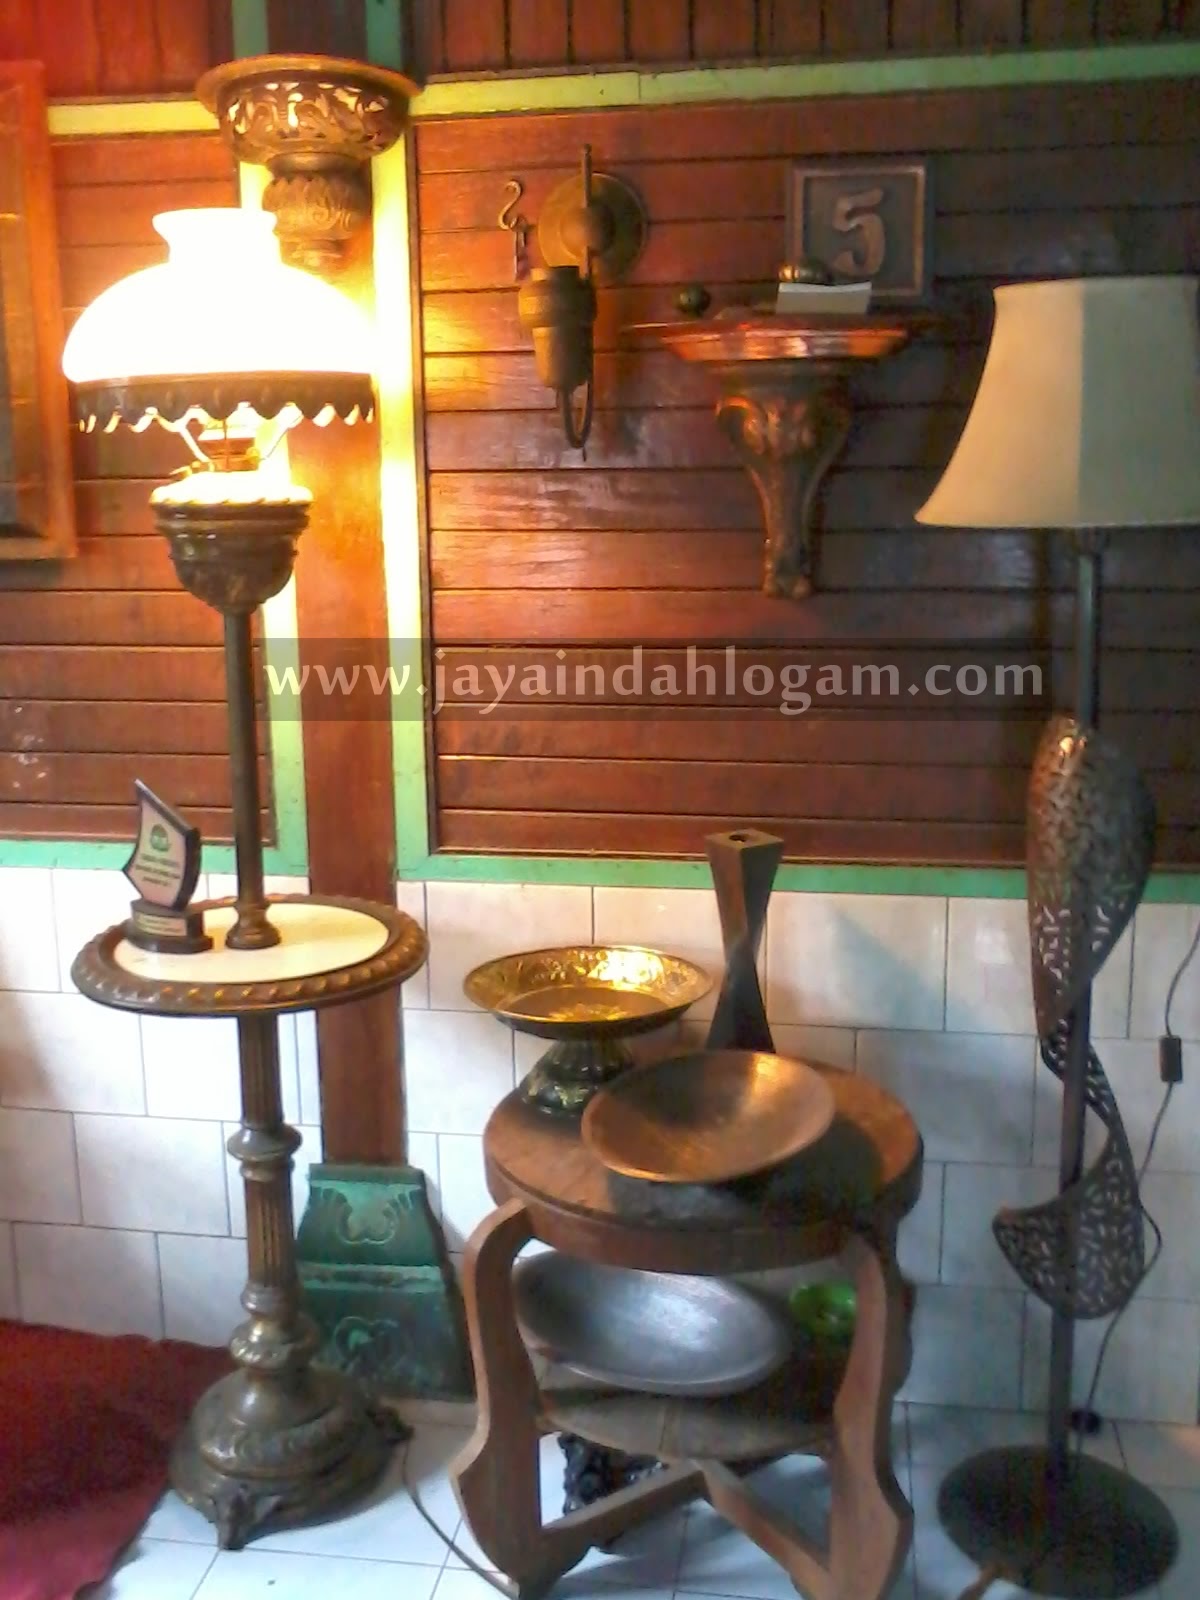 http://www.jayaindahlogam.com/2014/08/lampu-stand.html